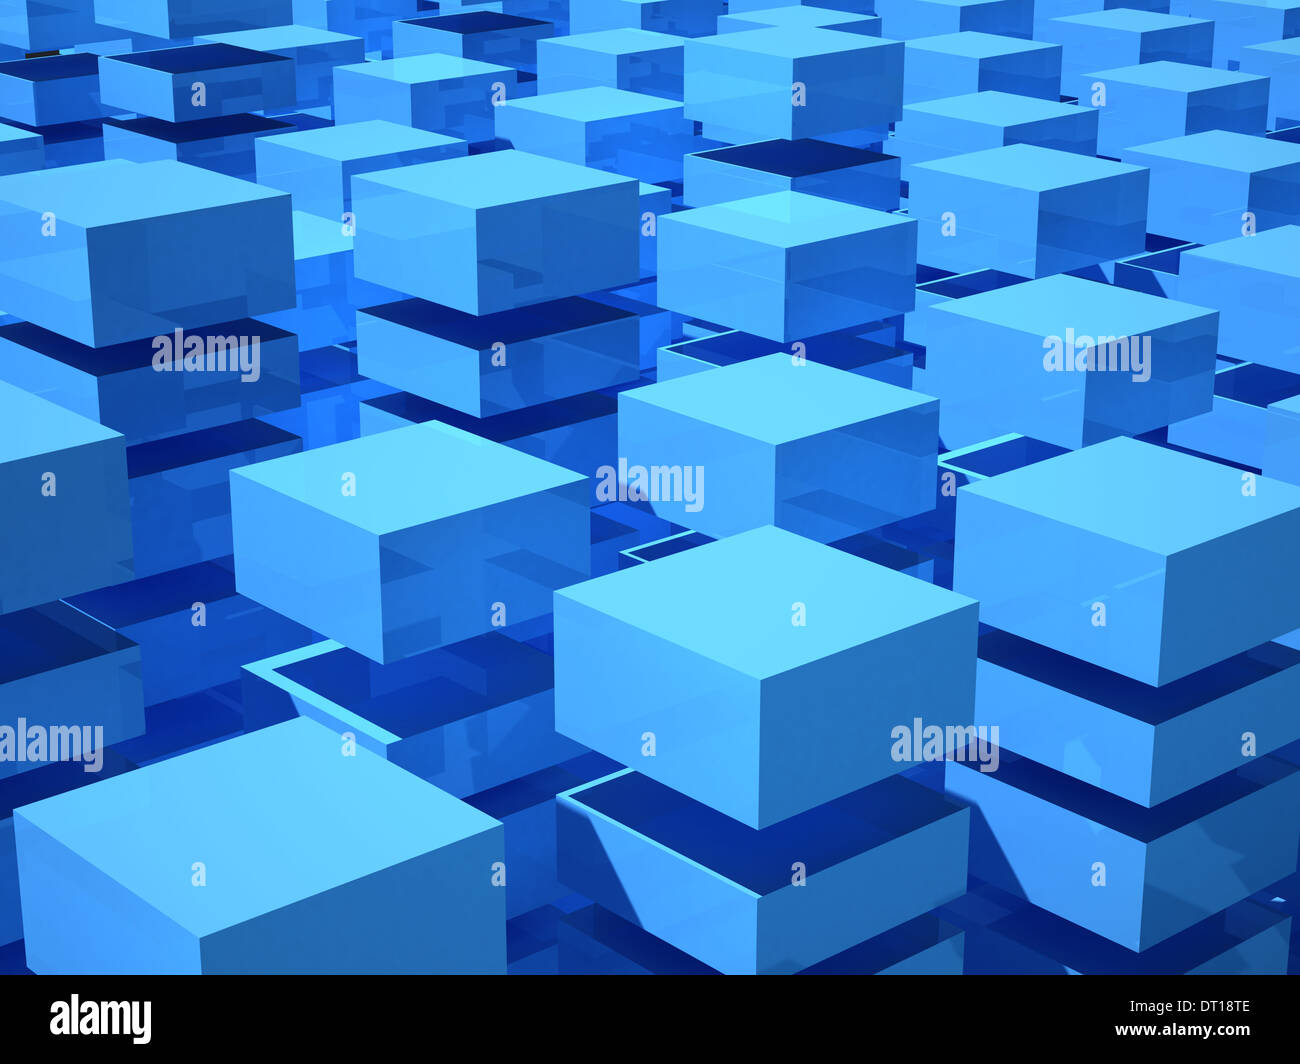 Abstract 3d illustration avec gamme de boîtes bleues et blanches Banque D'Images